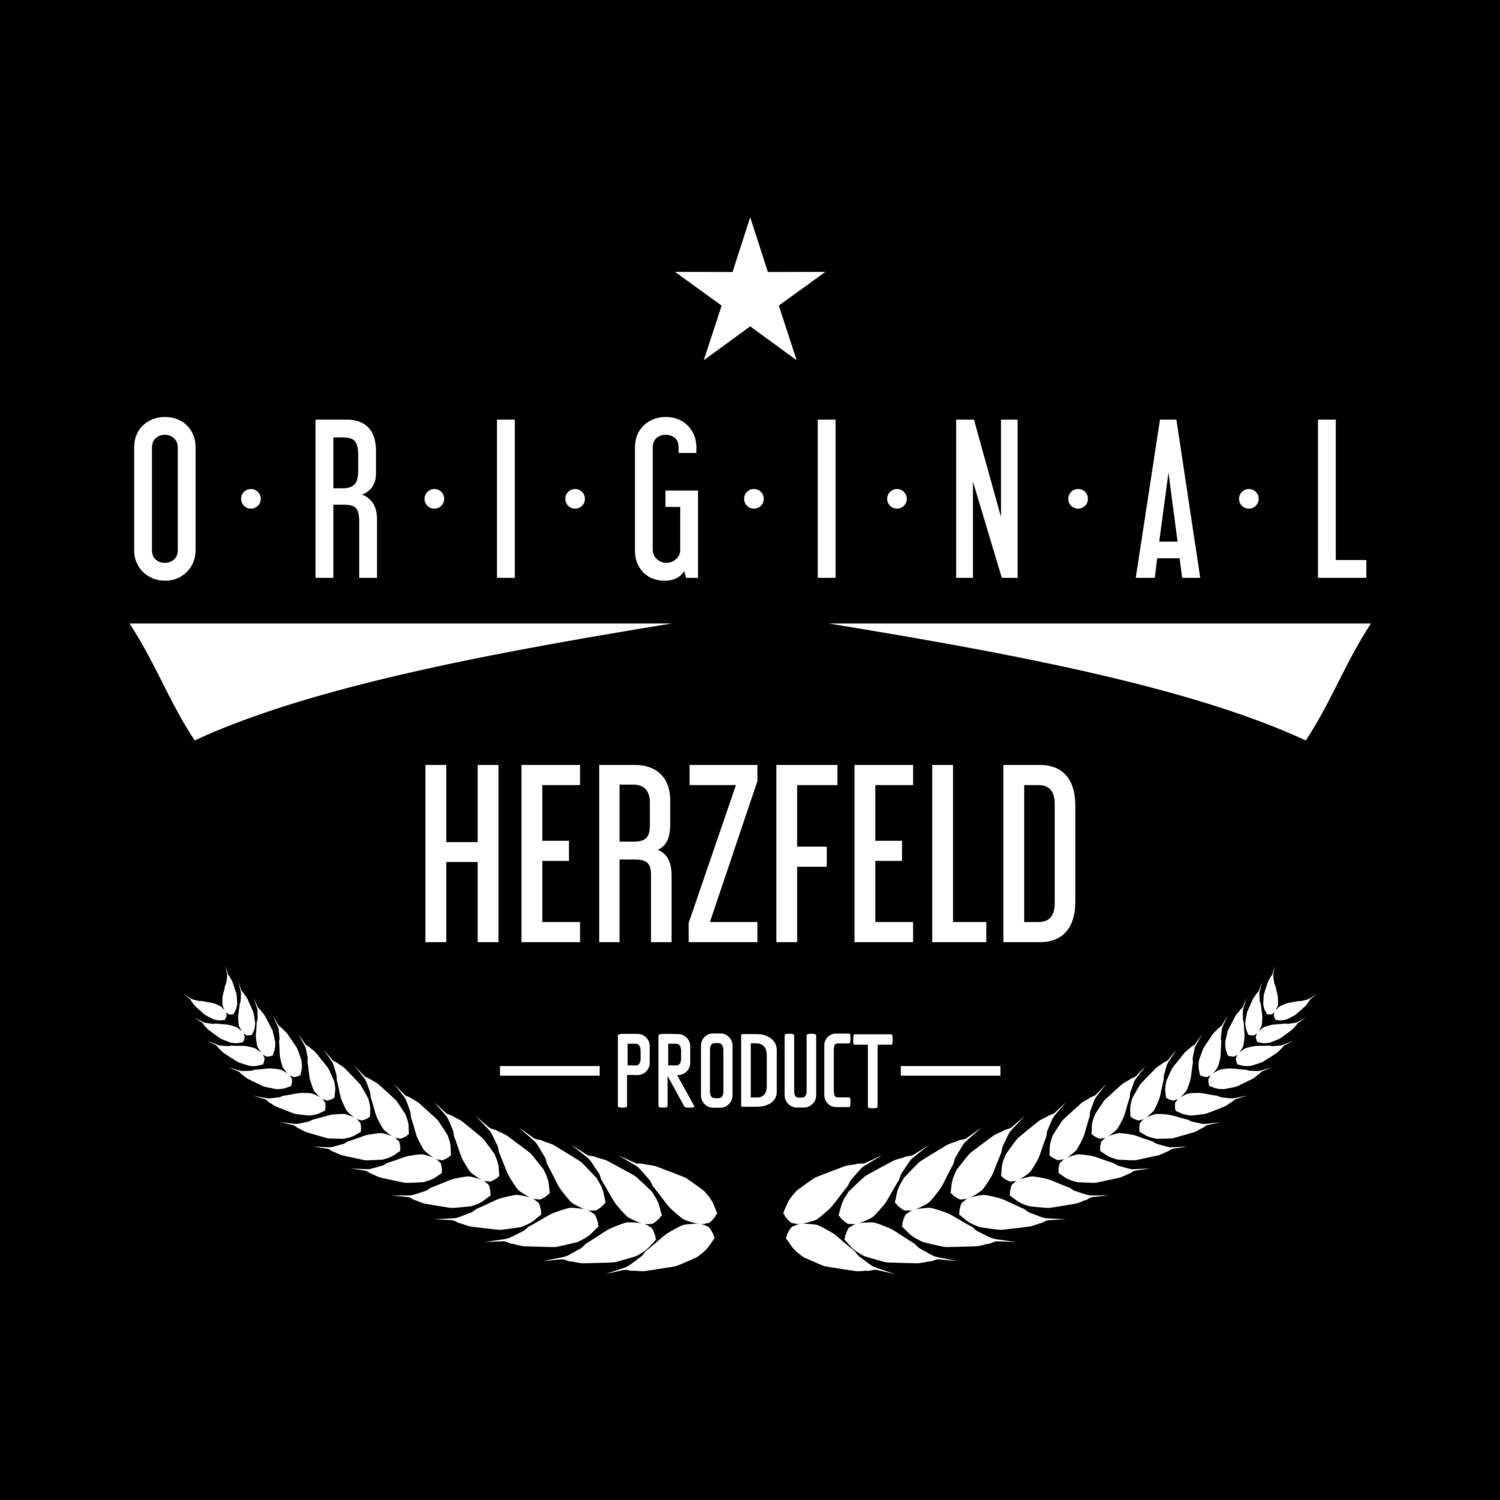 Herzfeld T-Shirt »Original Product«